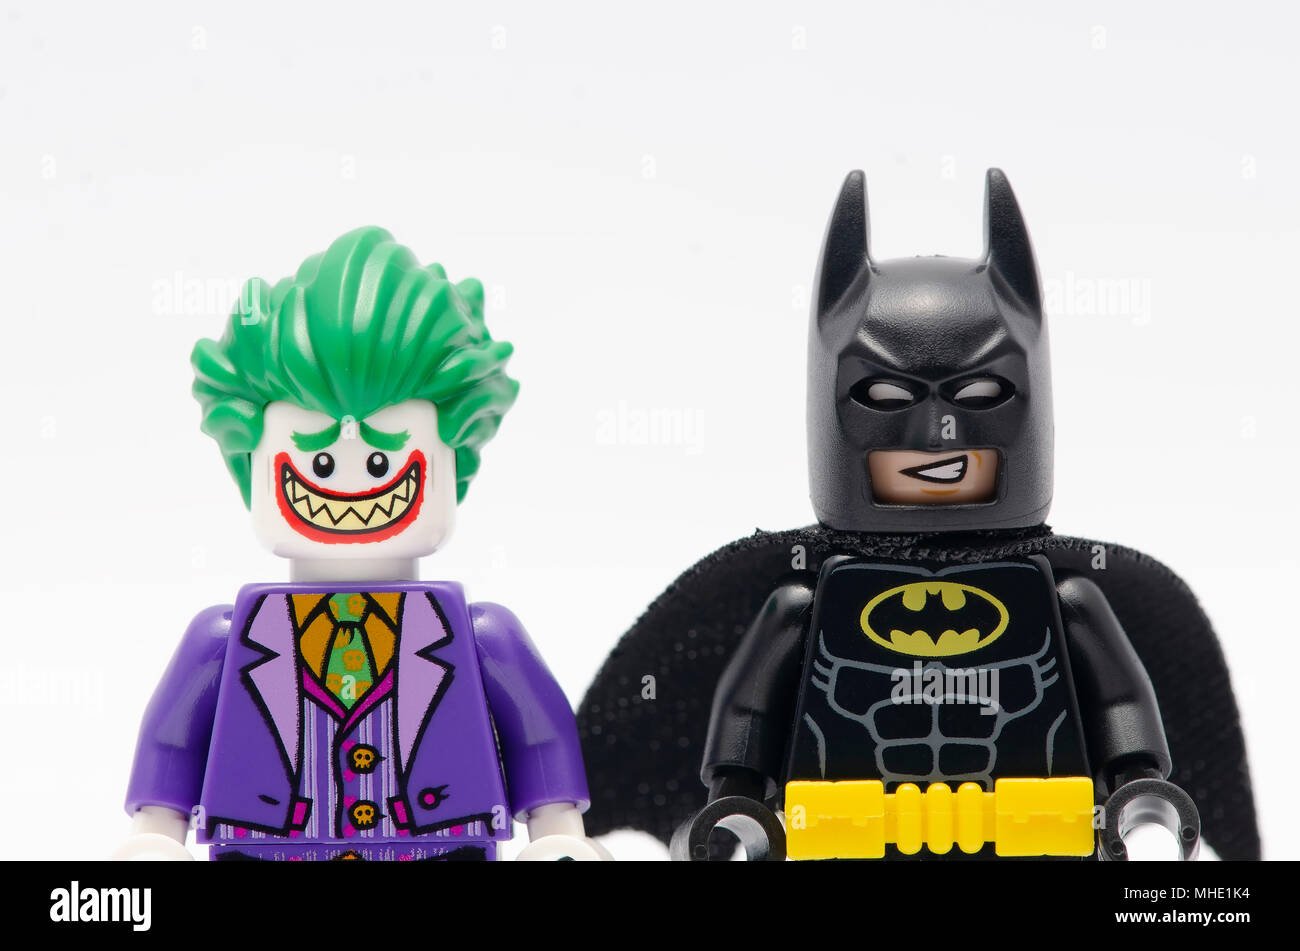 Lego Batman und Joker Minifigur auf weißem Hintergrund Stockfotografie -  Alamy